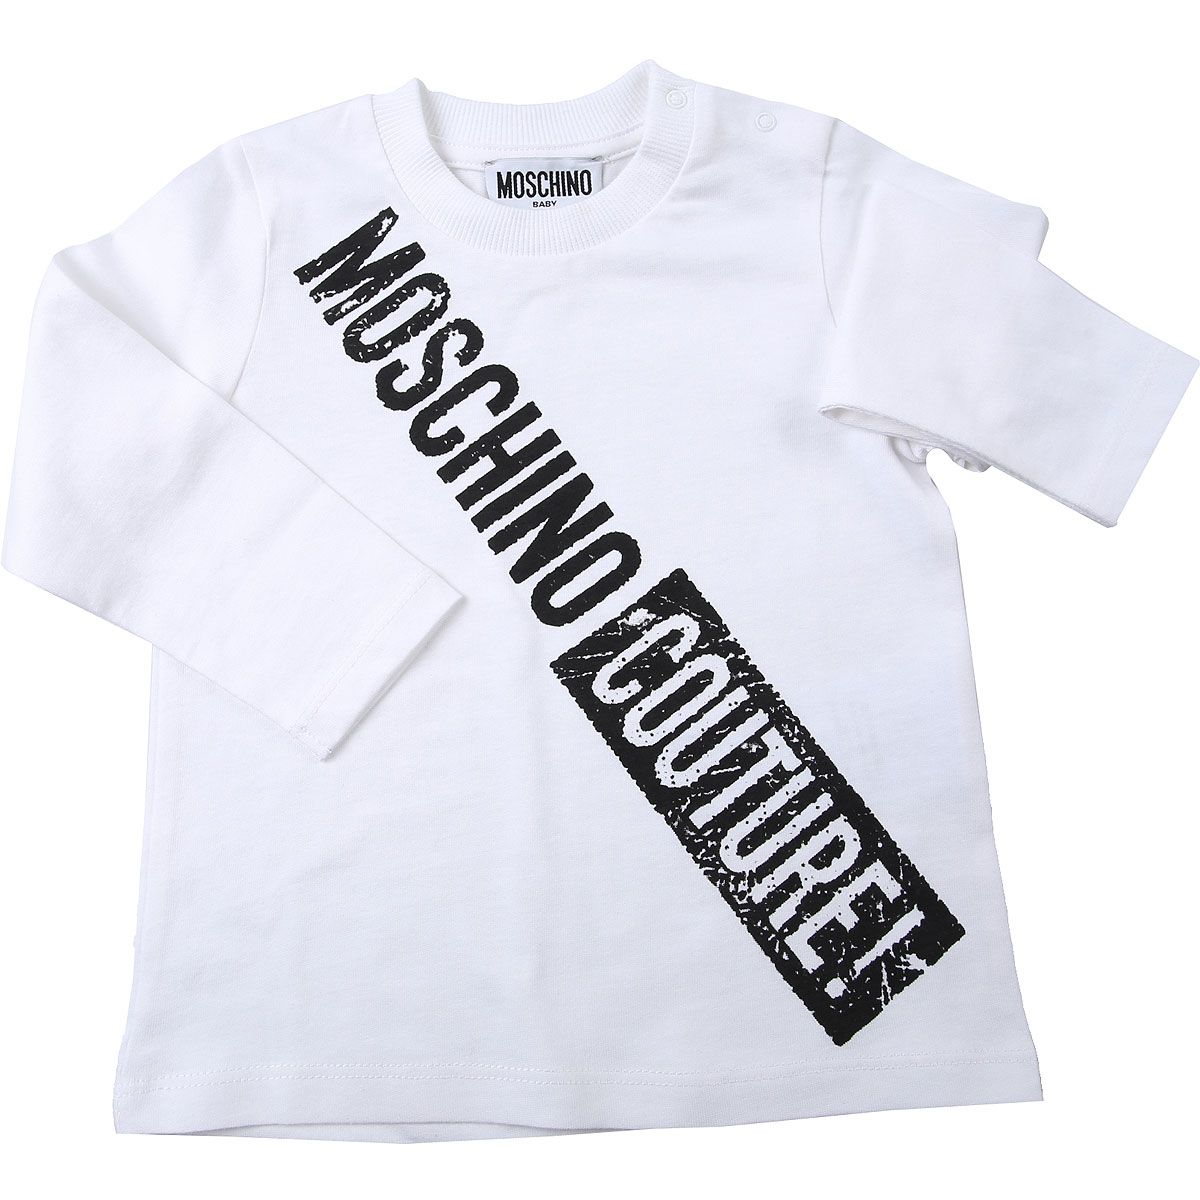 Moschino Baby T-Shirt für Jungen Günstig im Sale, Weiss, Baumwolle, 2017, 18M 2Y 3Y